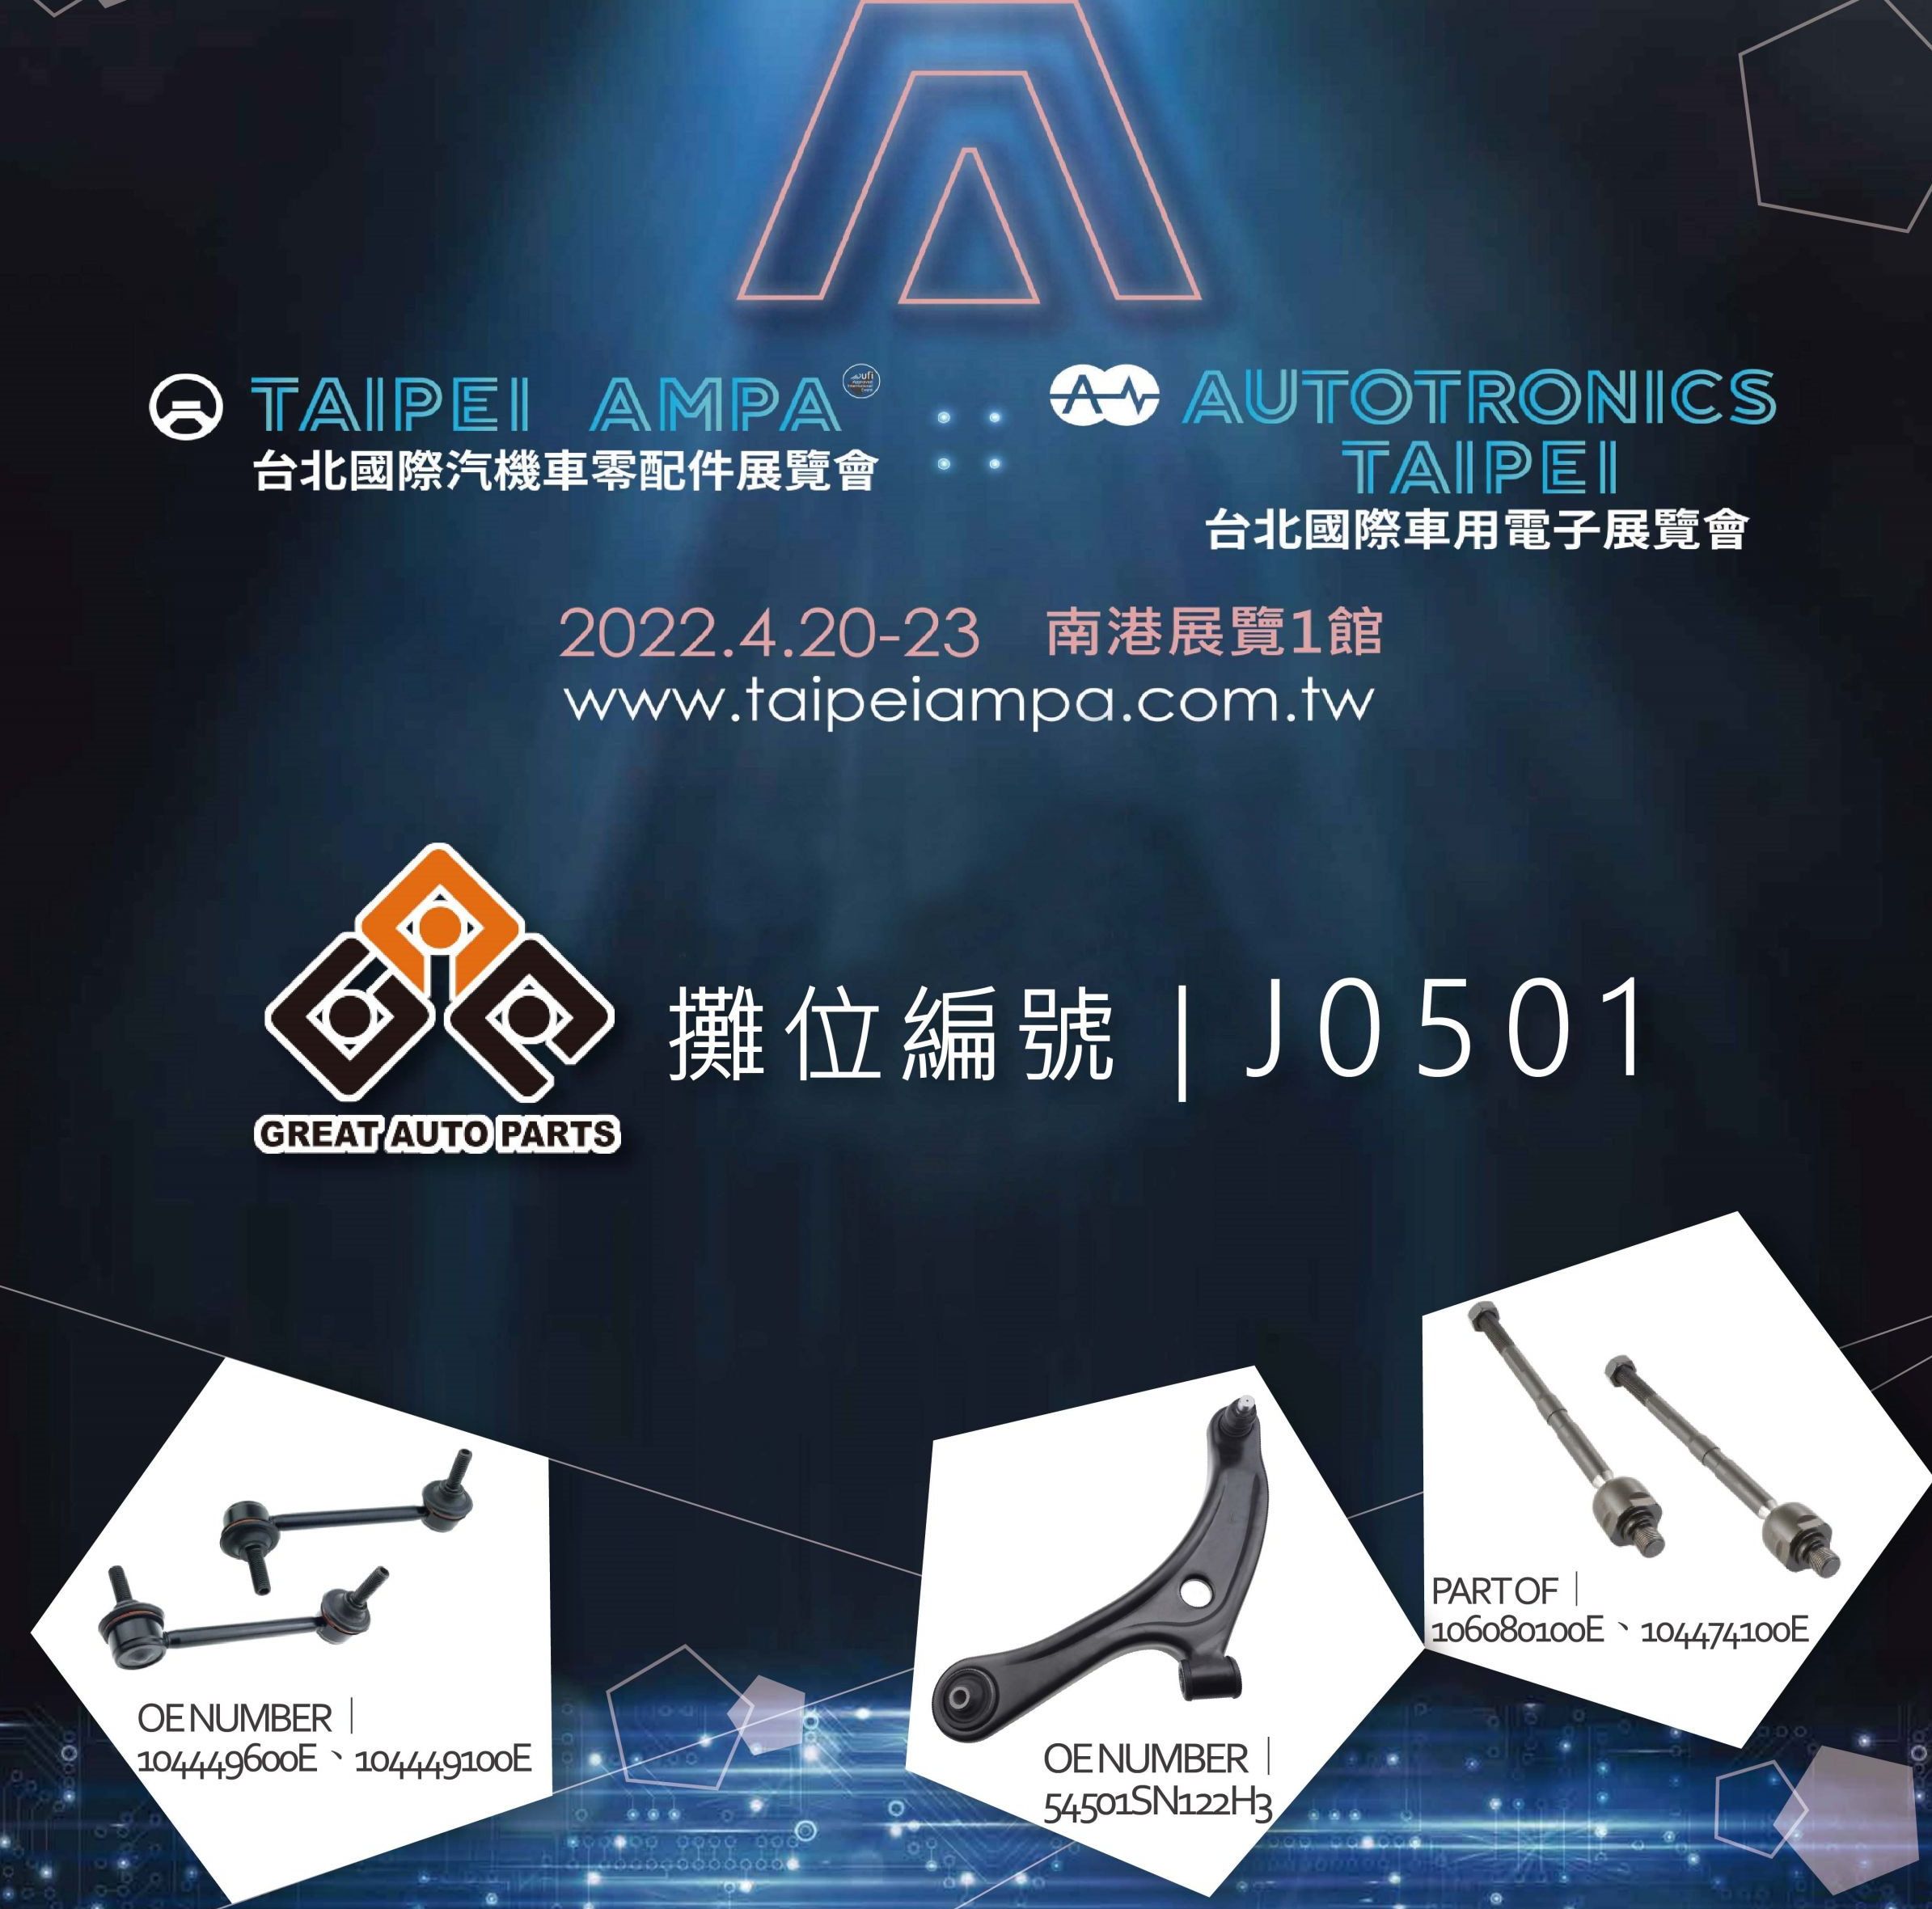 Taipei AMPA 2022 (Grandes Piezas de Automóviles)